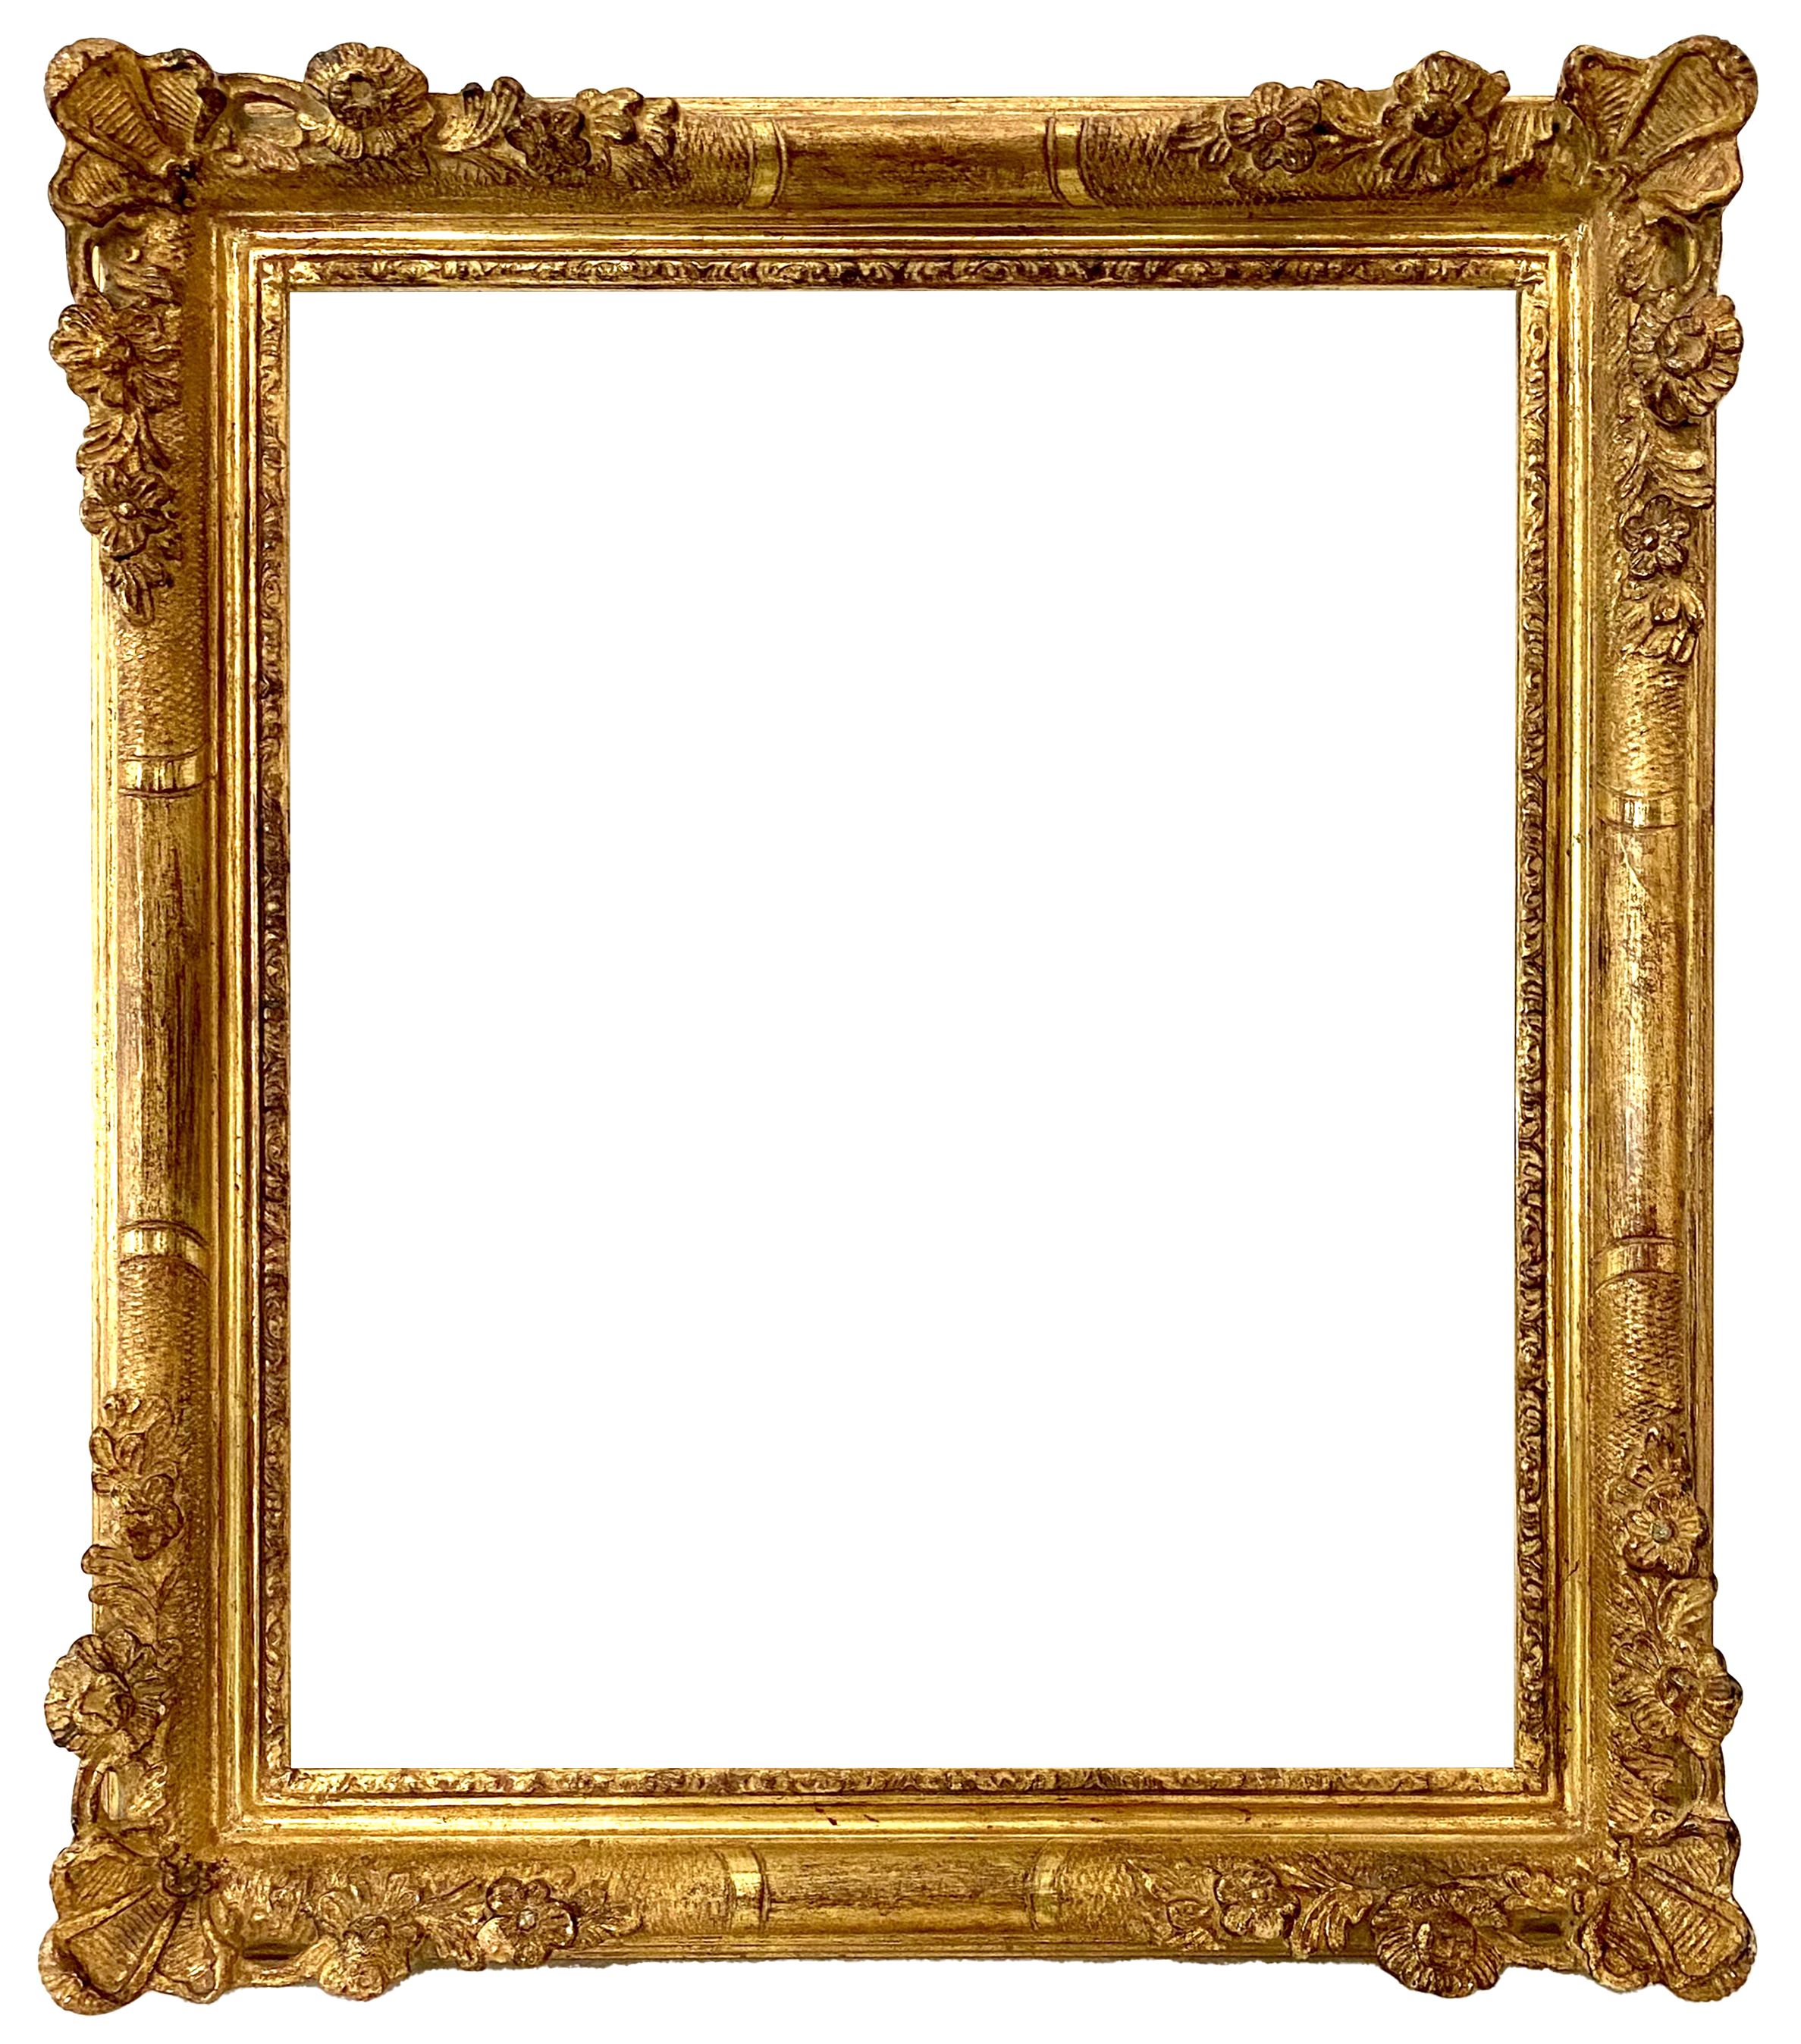 Cadre de style Louis XIV - 29,50 x 24,20 - REF - 1564